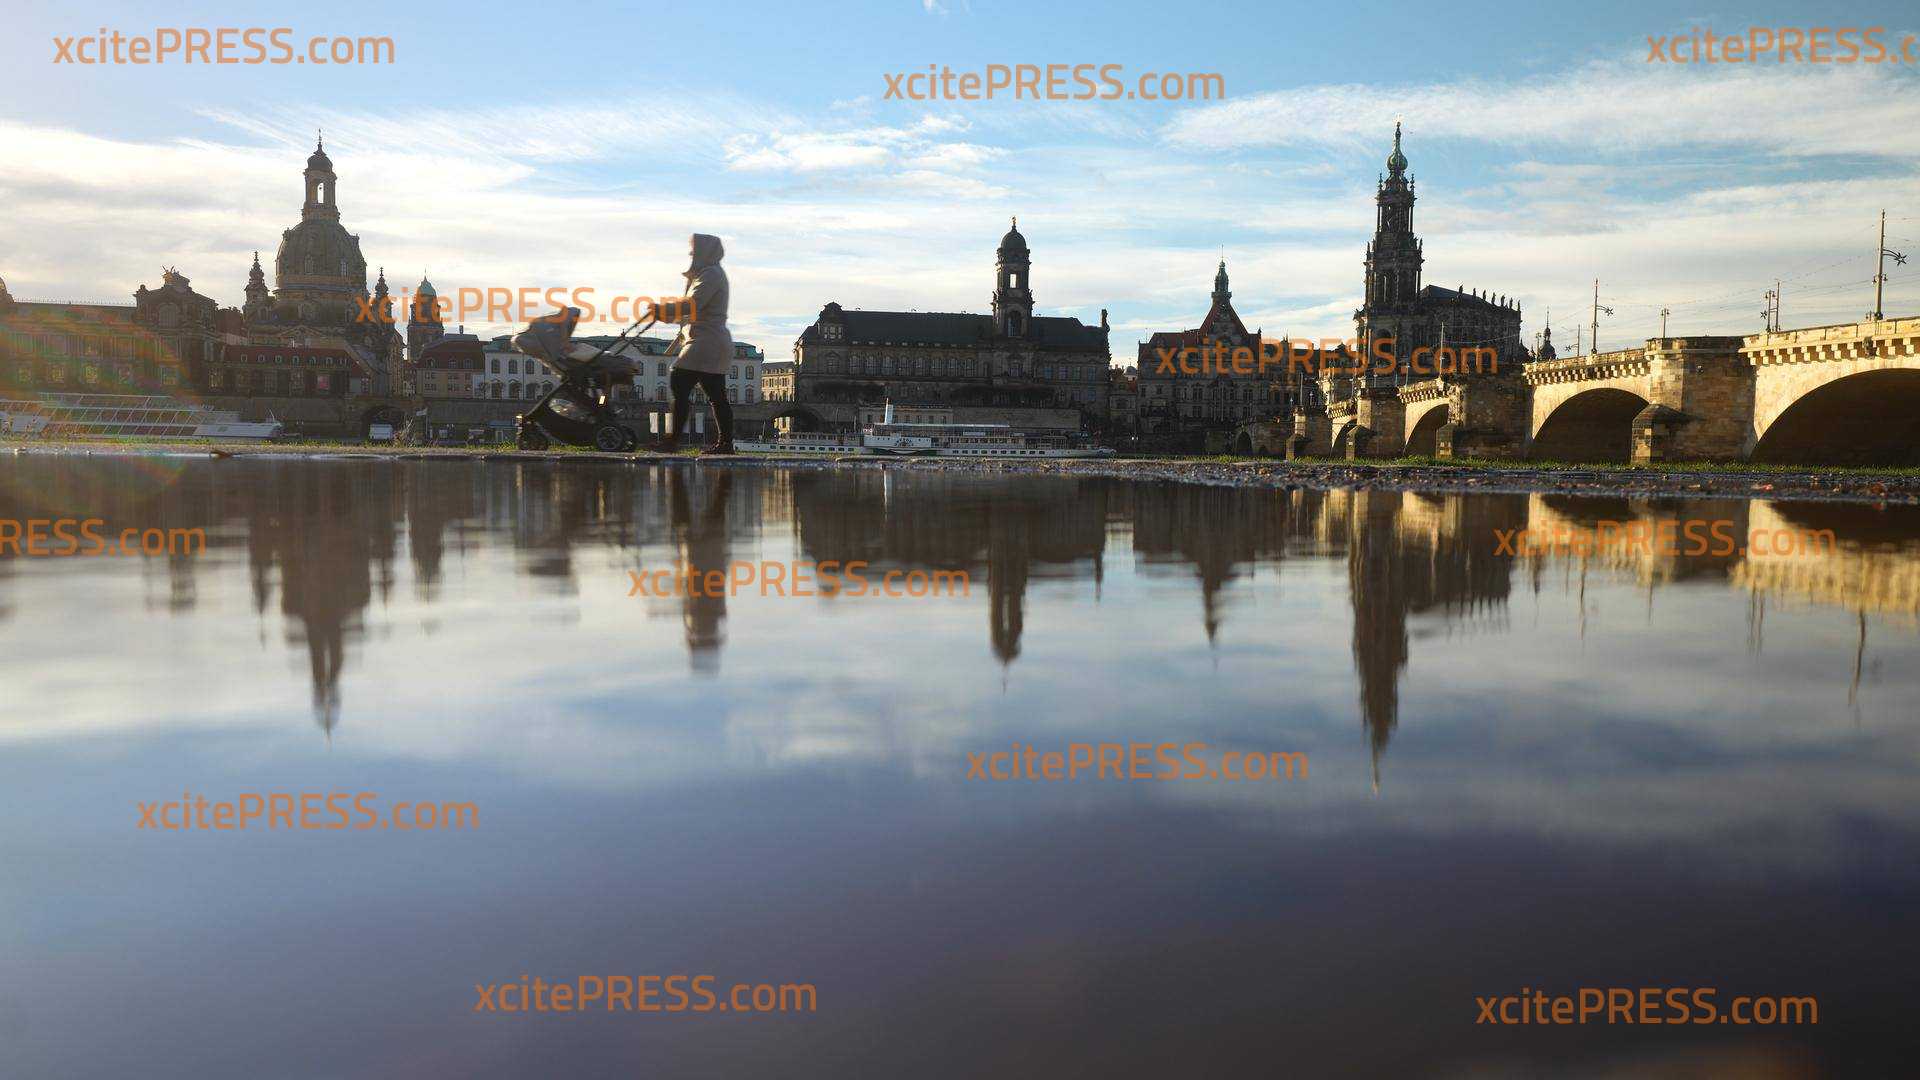 Update: Aktuelle Hochwasserwarnung: Hochwasser-Angst! Elbpegel in Sachsens Landeshauptstadt Dresden soll erneut auf fast 6 Meter ansteigen - derweil läuft die Bereinigung der vergangenen Hochwasserschäden auf Hochtouren (ON TAPE) - Dauerregen für die kommenden Tage vorhergesagt: weite Überschwemmungen drohen - ausführliche Schnittbilder